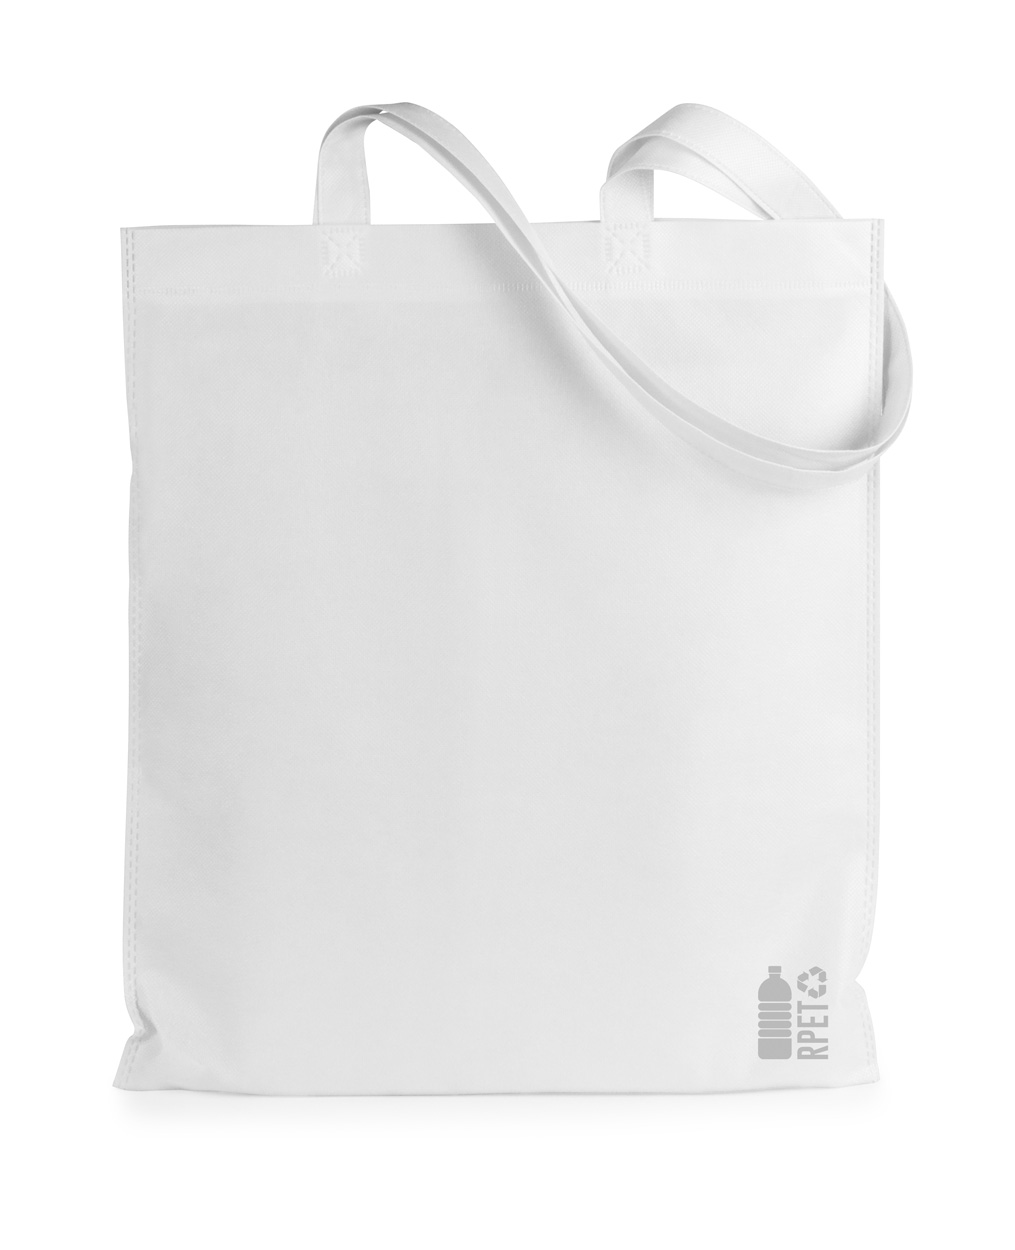 Rezzin RPET shopping bag - white